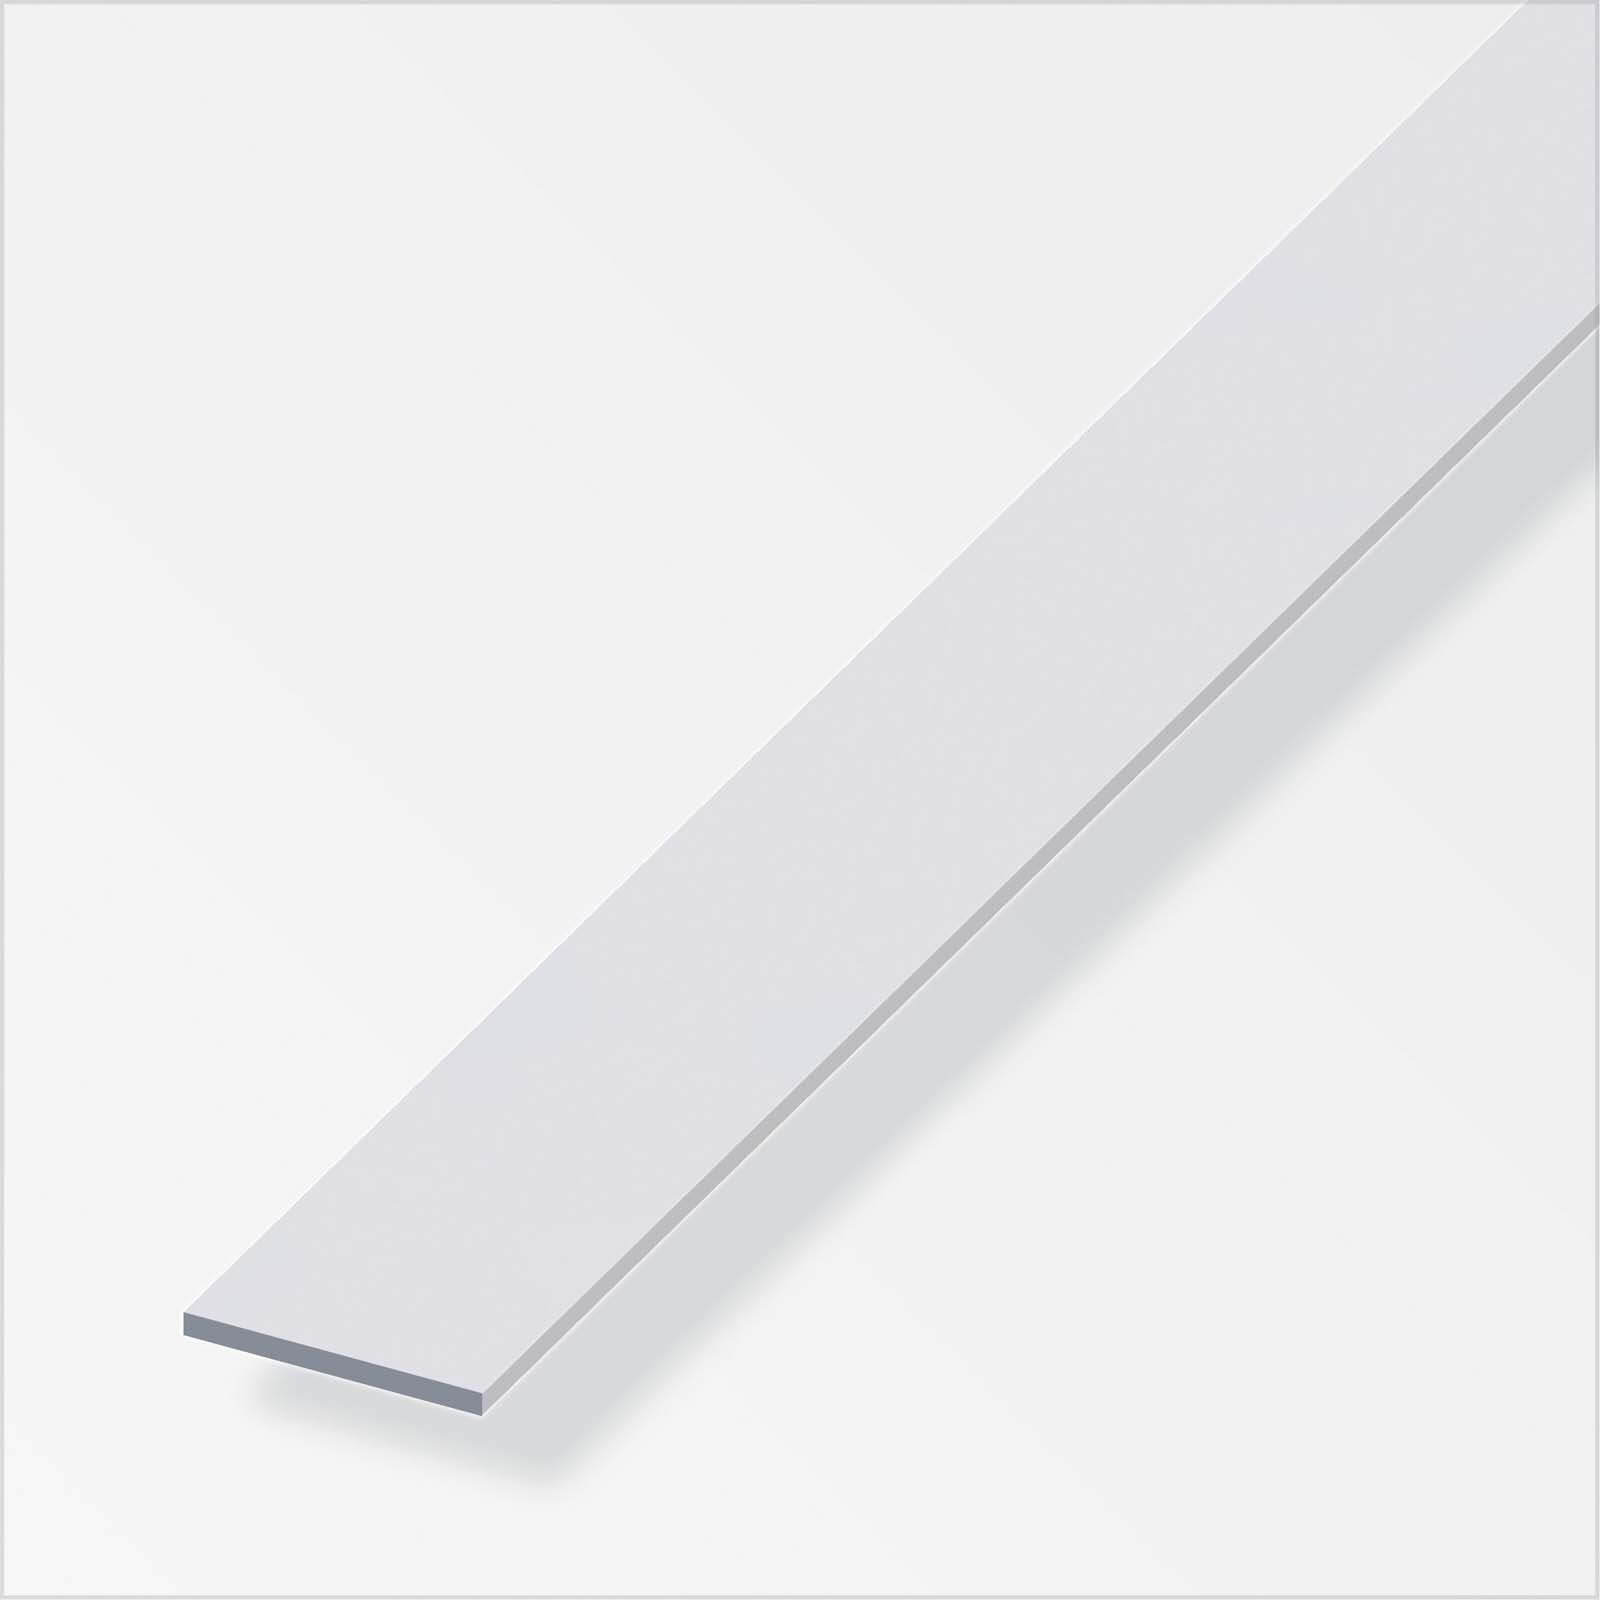 Anodised Aluminium Flat Bar Profile - 2m x 30mm